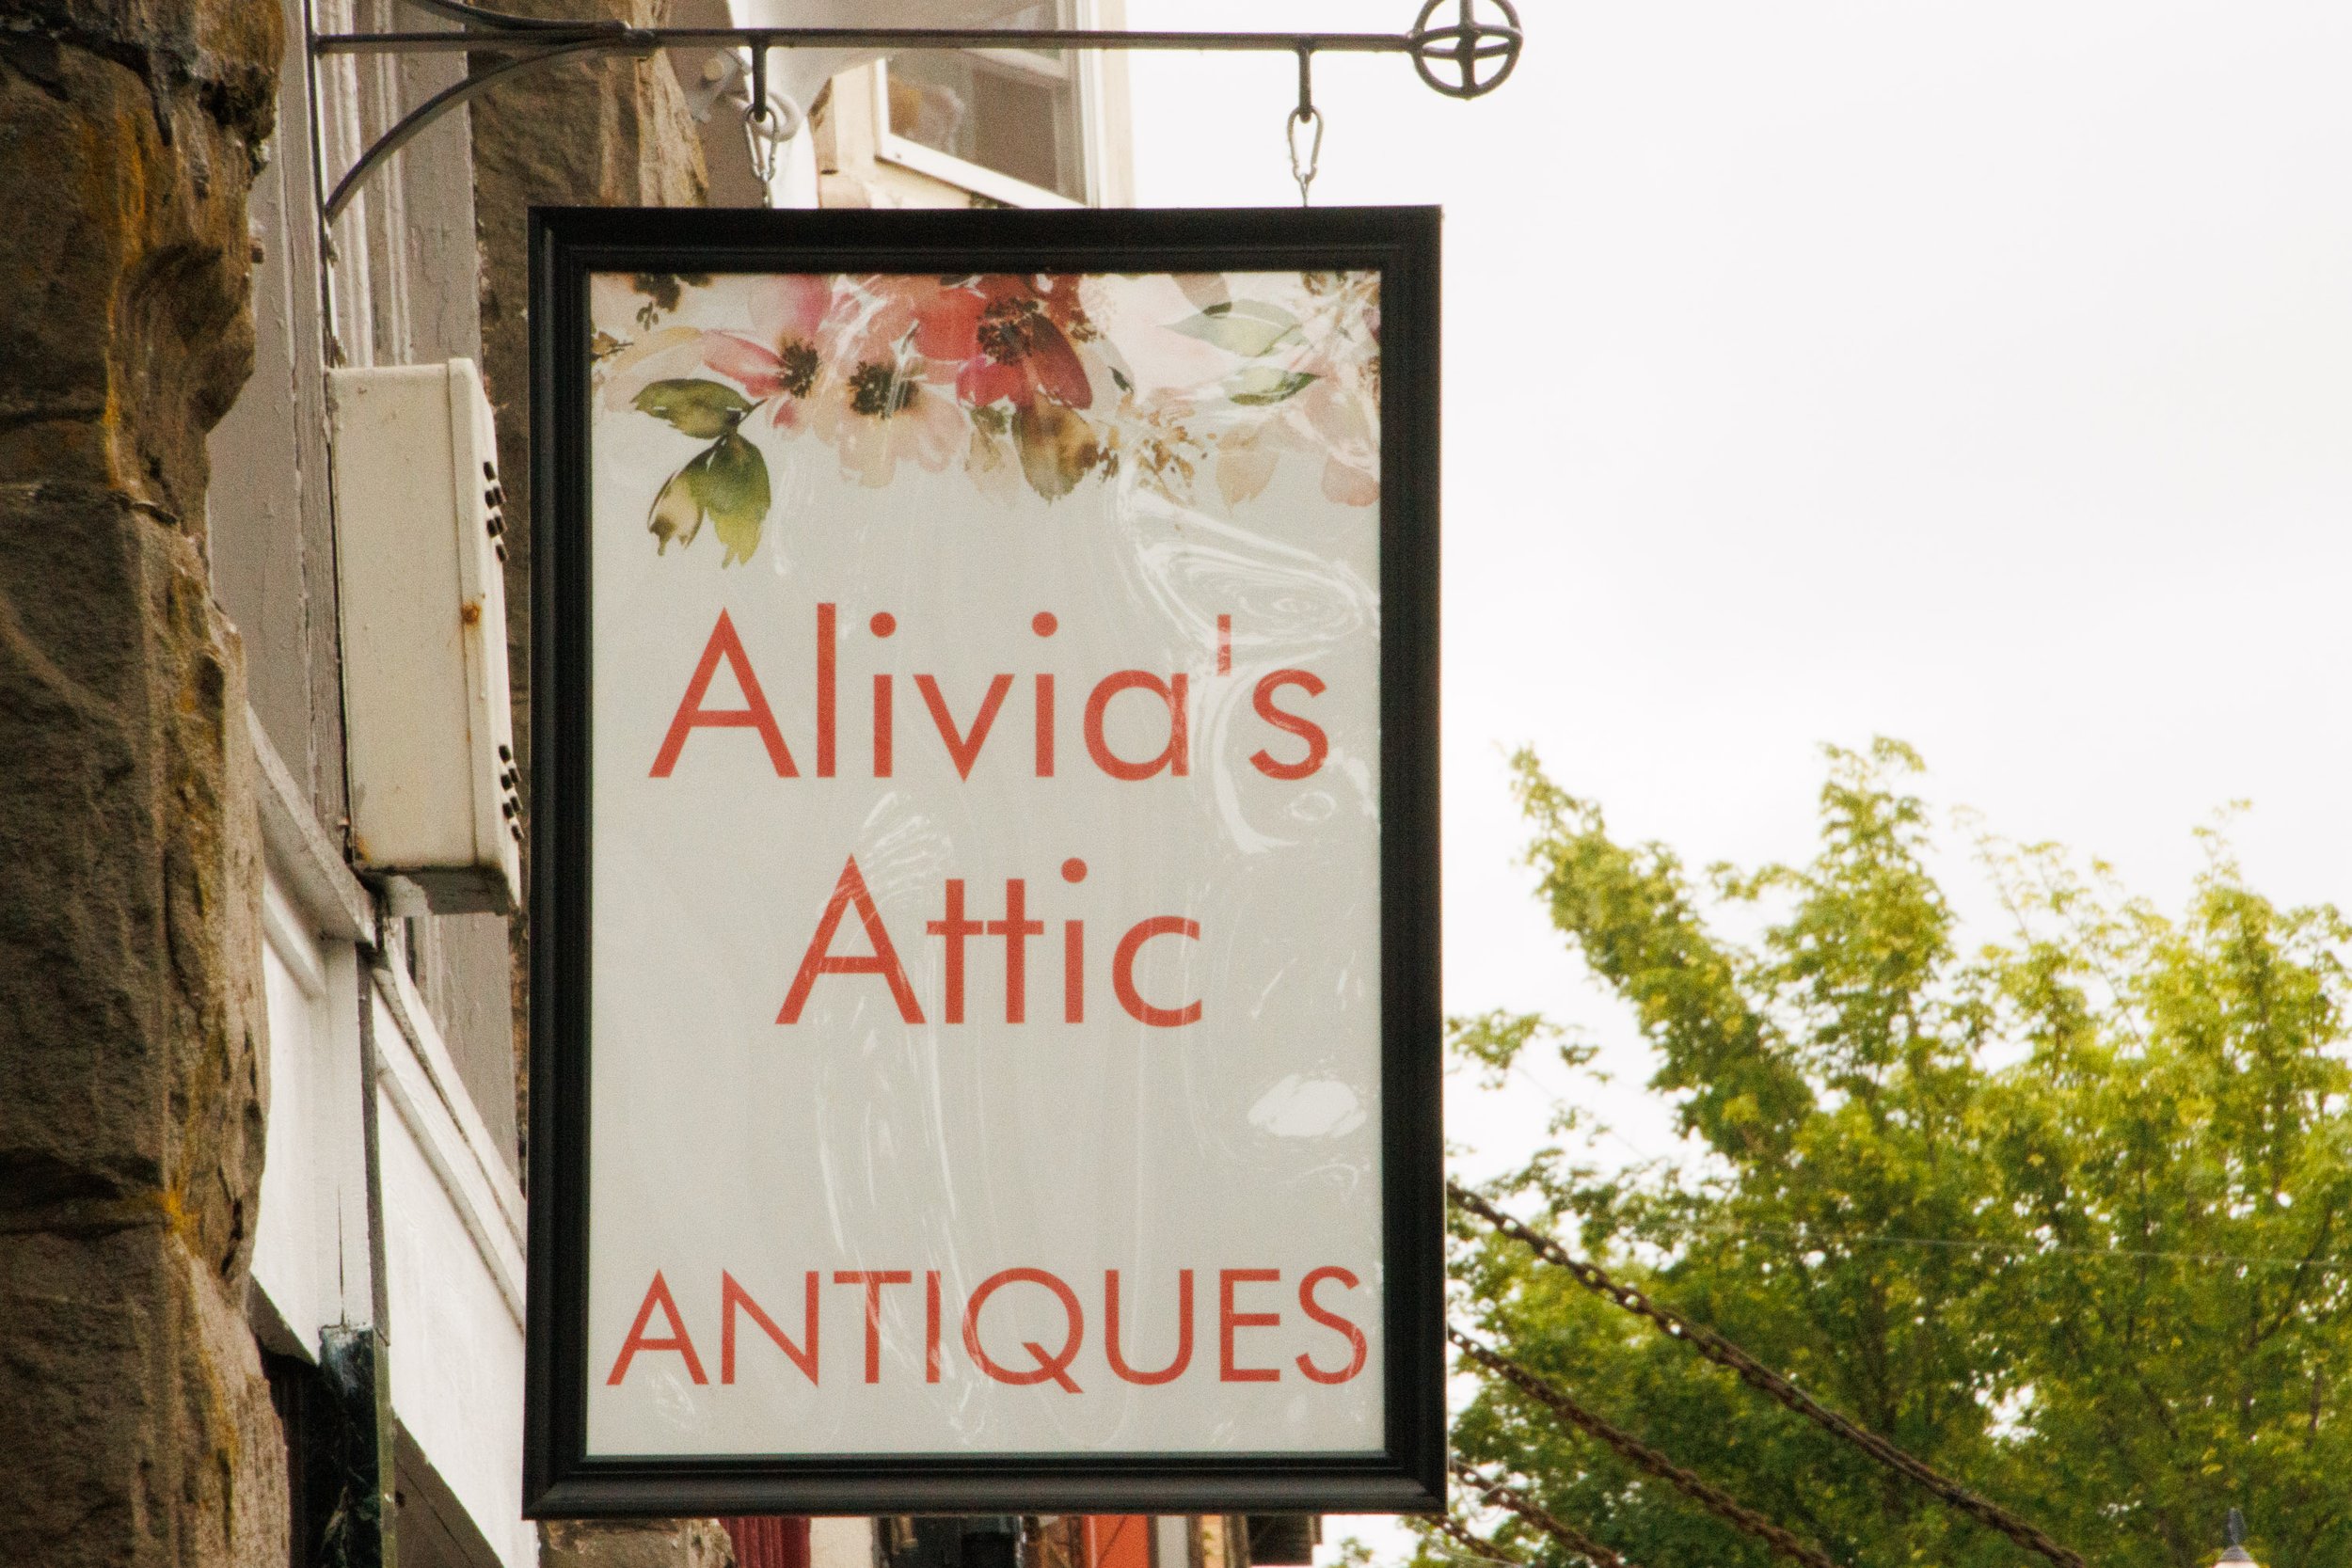 Antiques - Alivia's Attic-4063.jpg